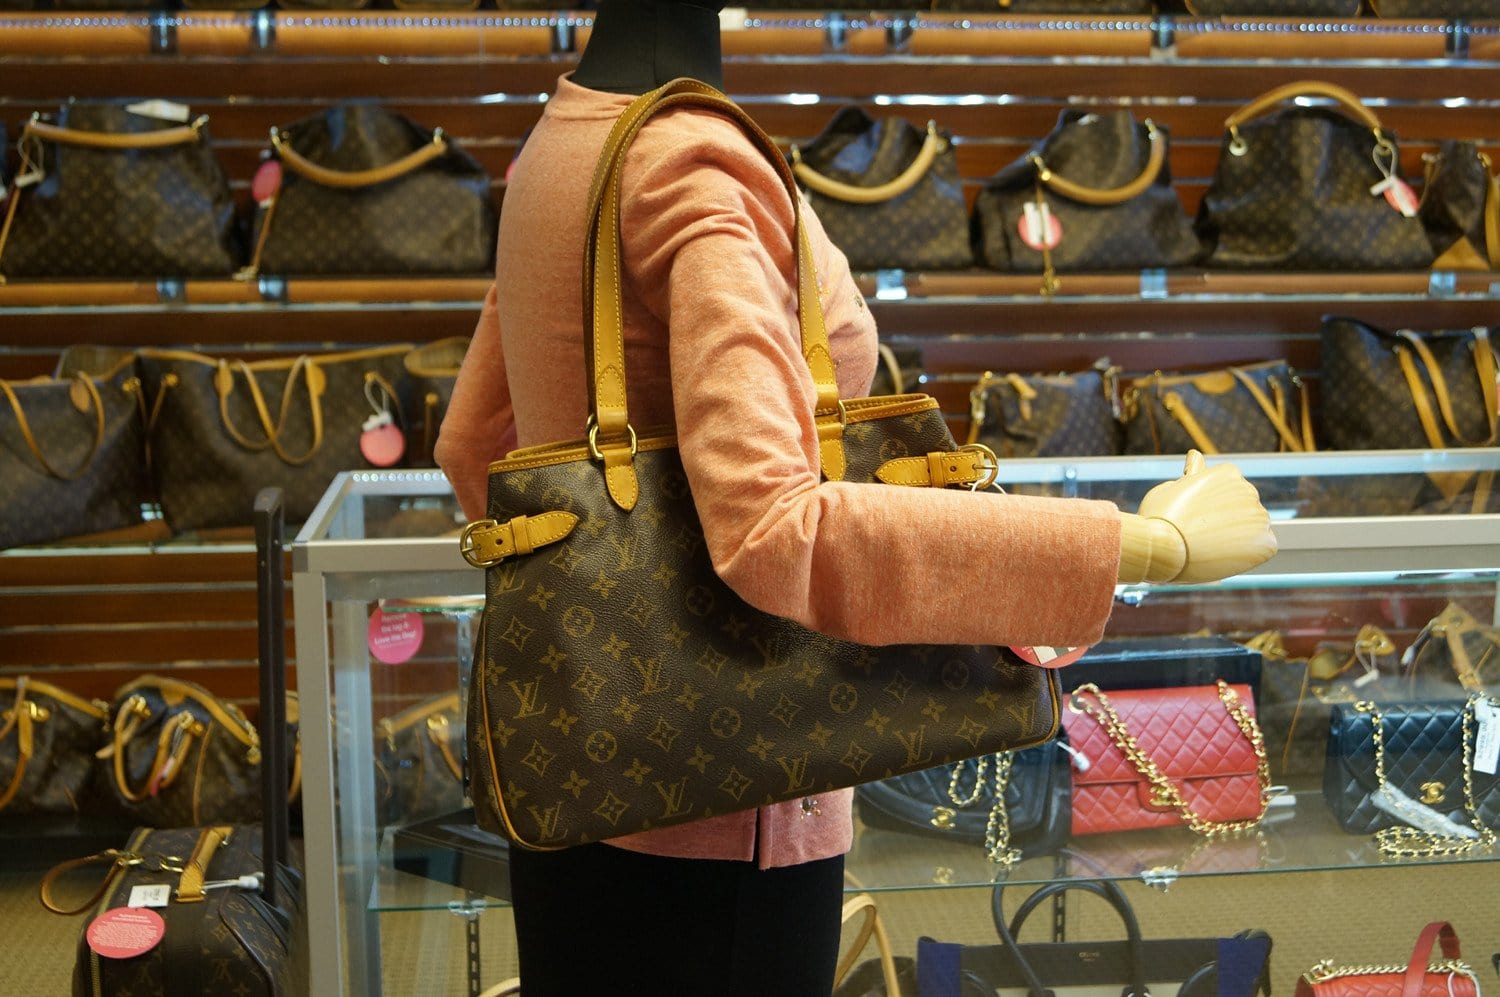 Louis Vuitton, Bags, Louis Vuitton Batignolles Leather Bag With Duster